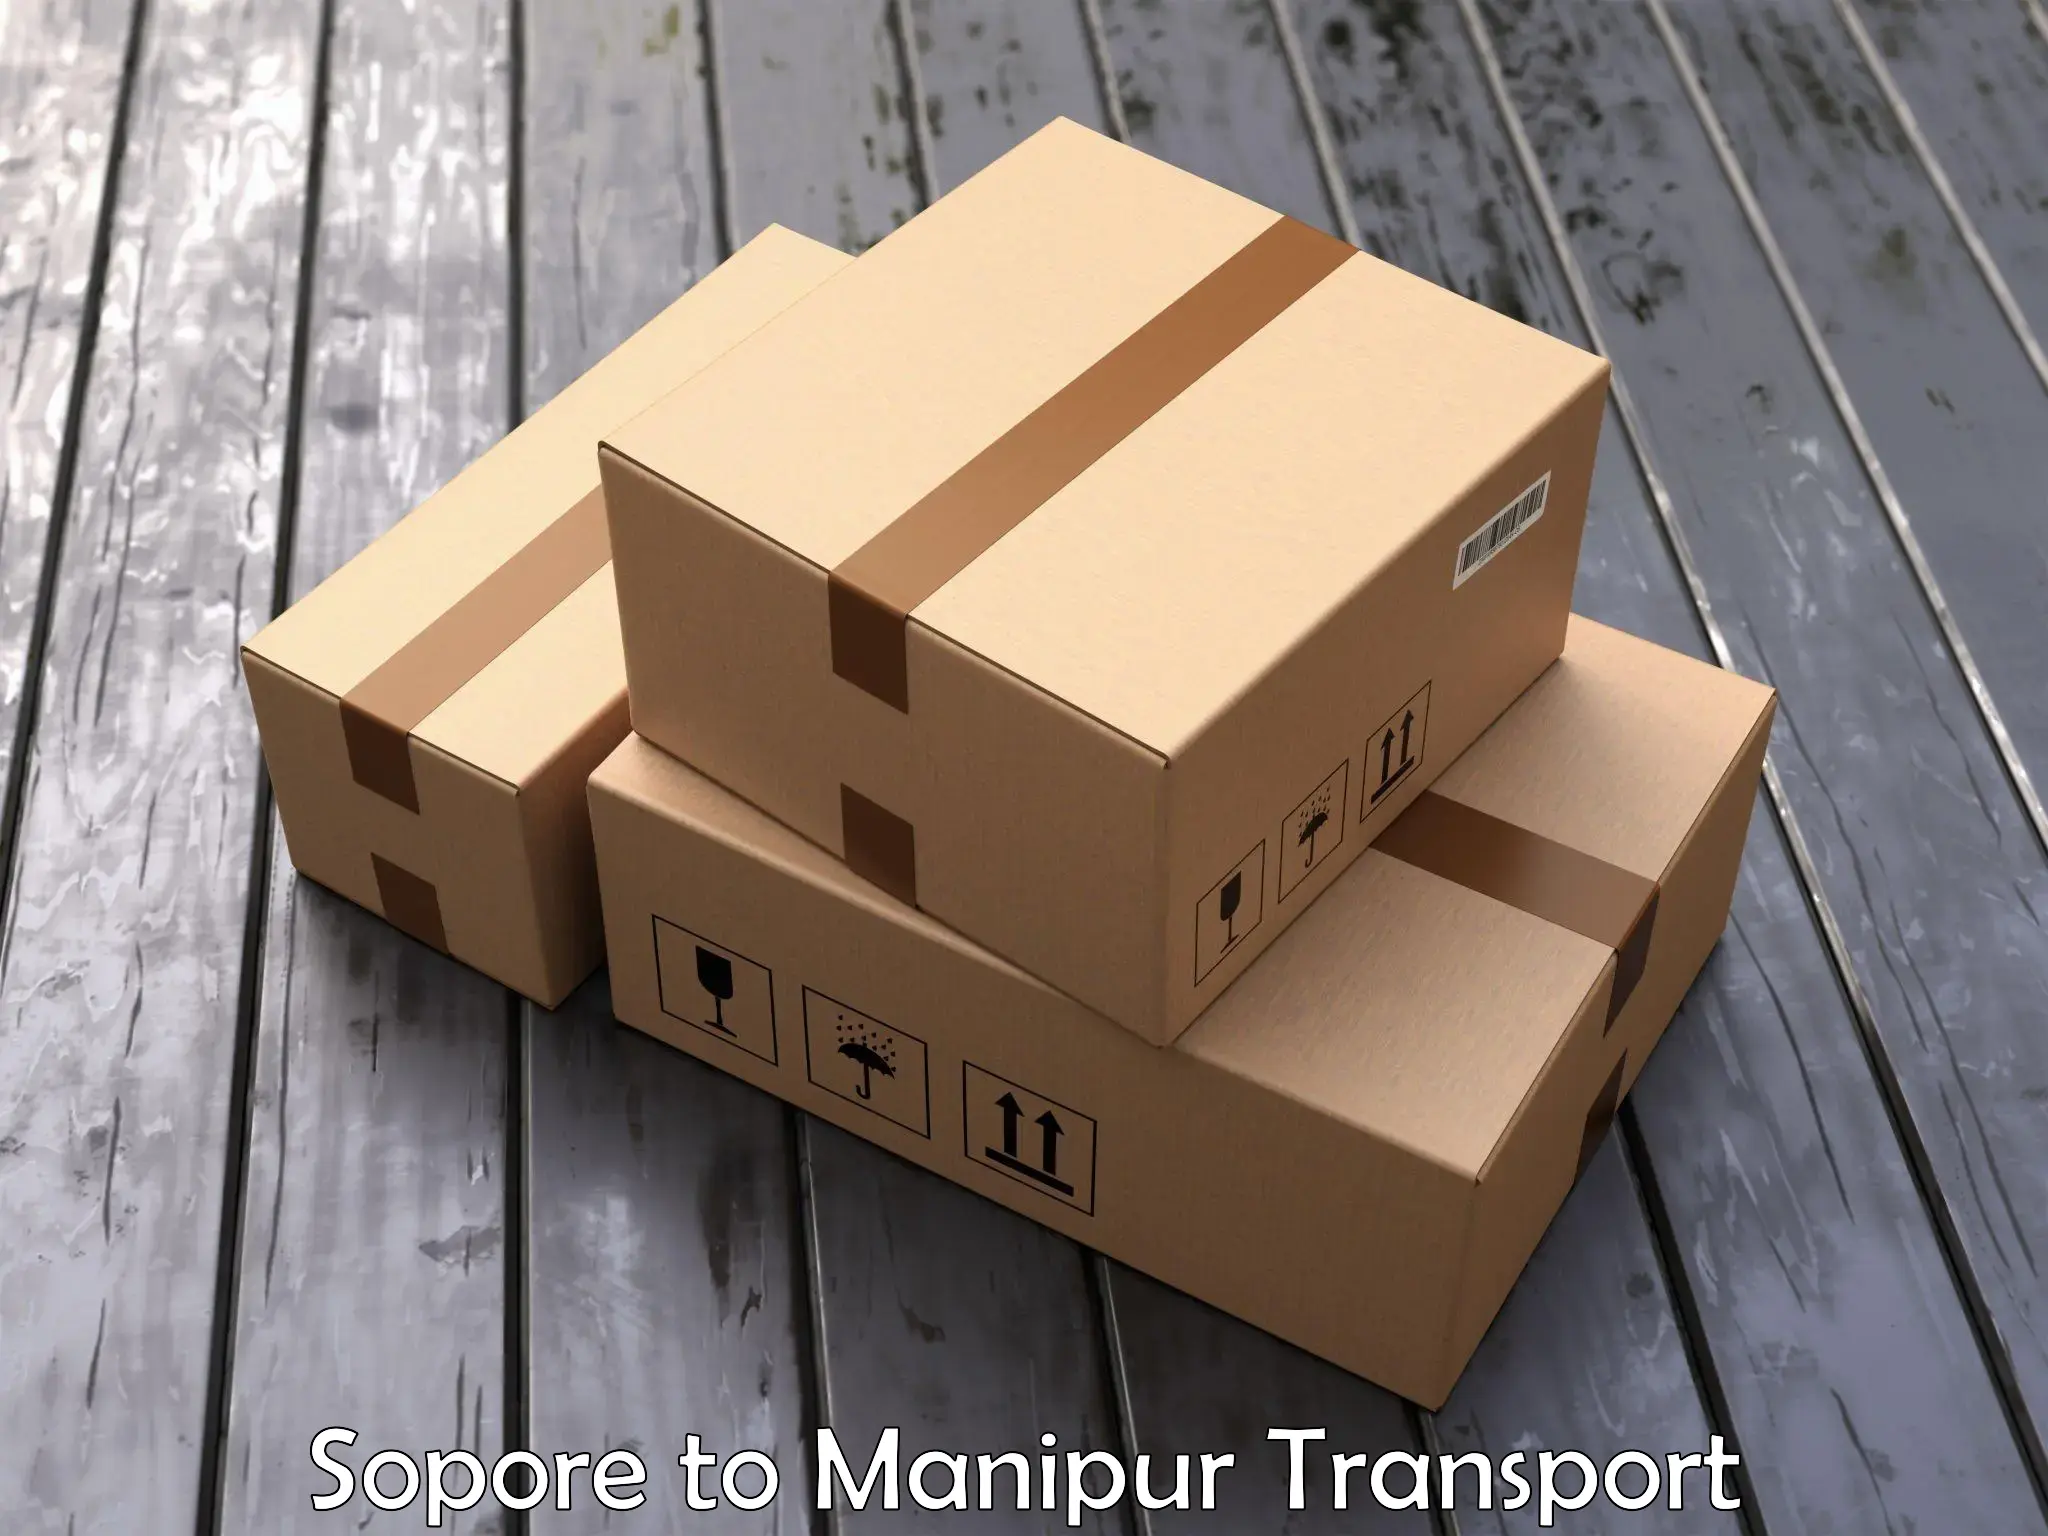 Furniture transport service Sopore to Senapati